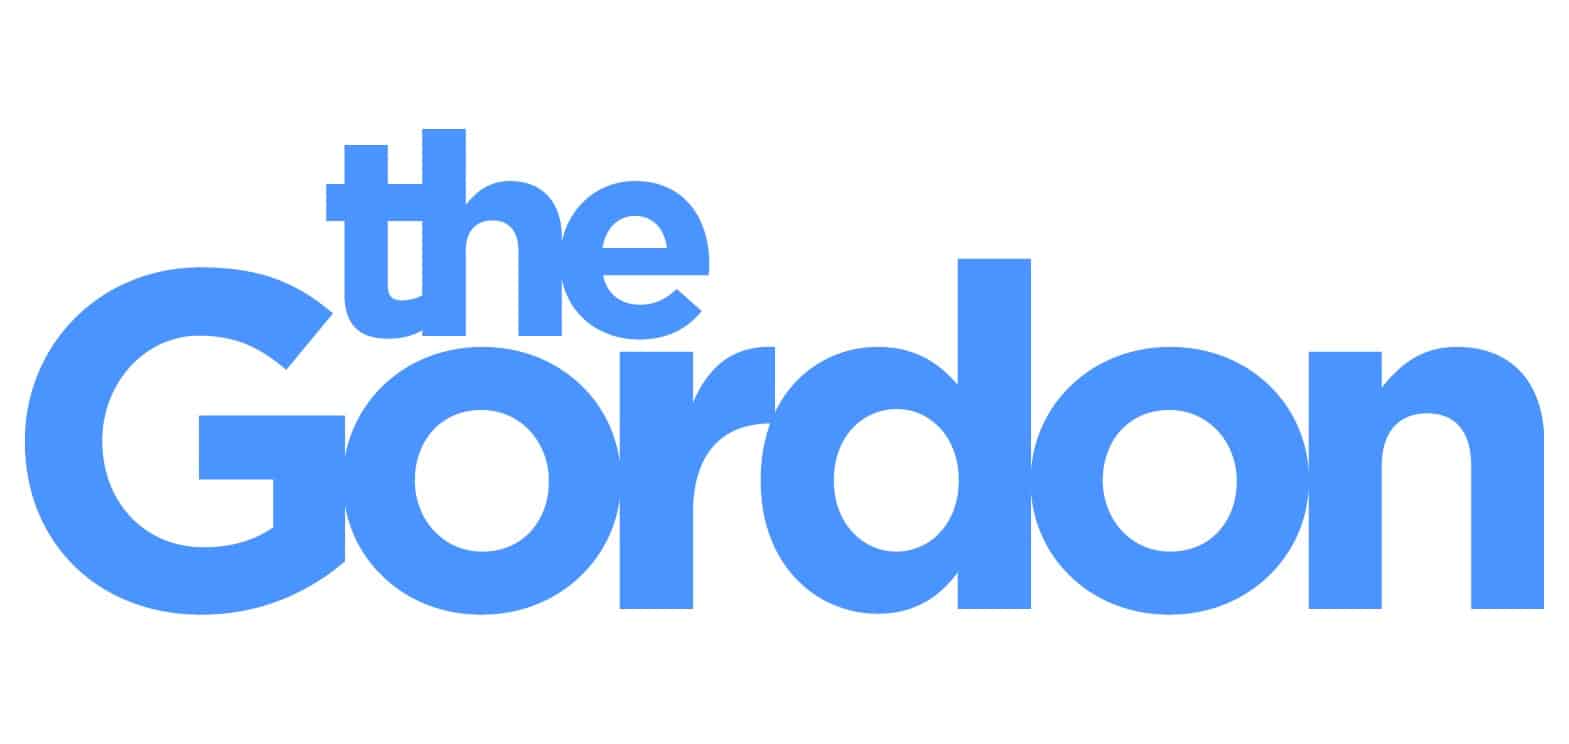 The Gordon Logotype